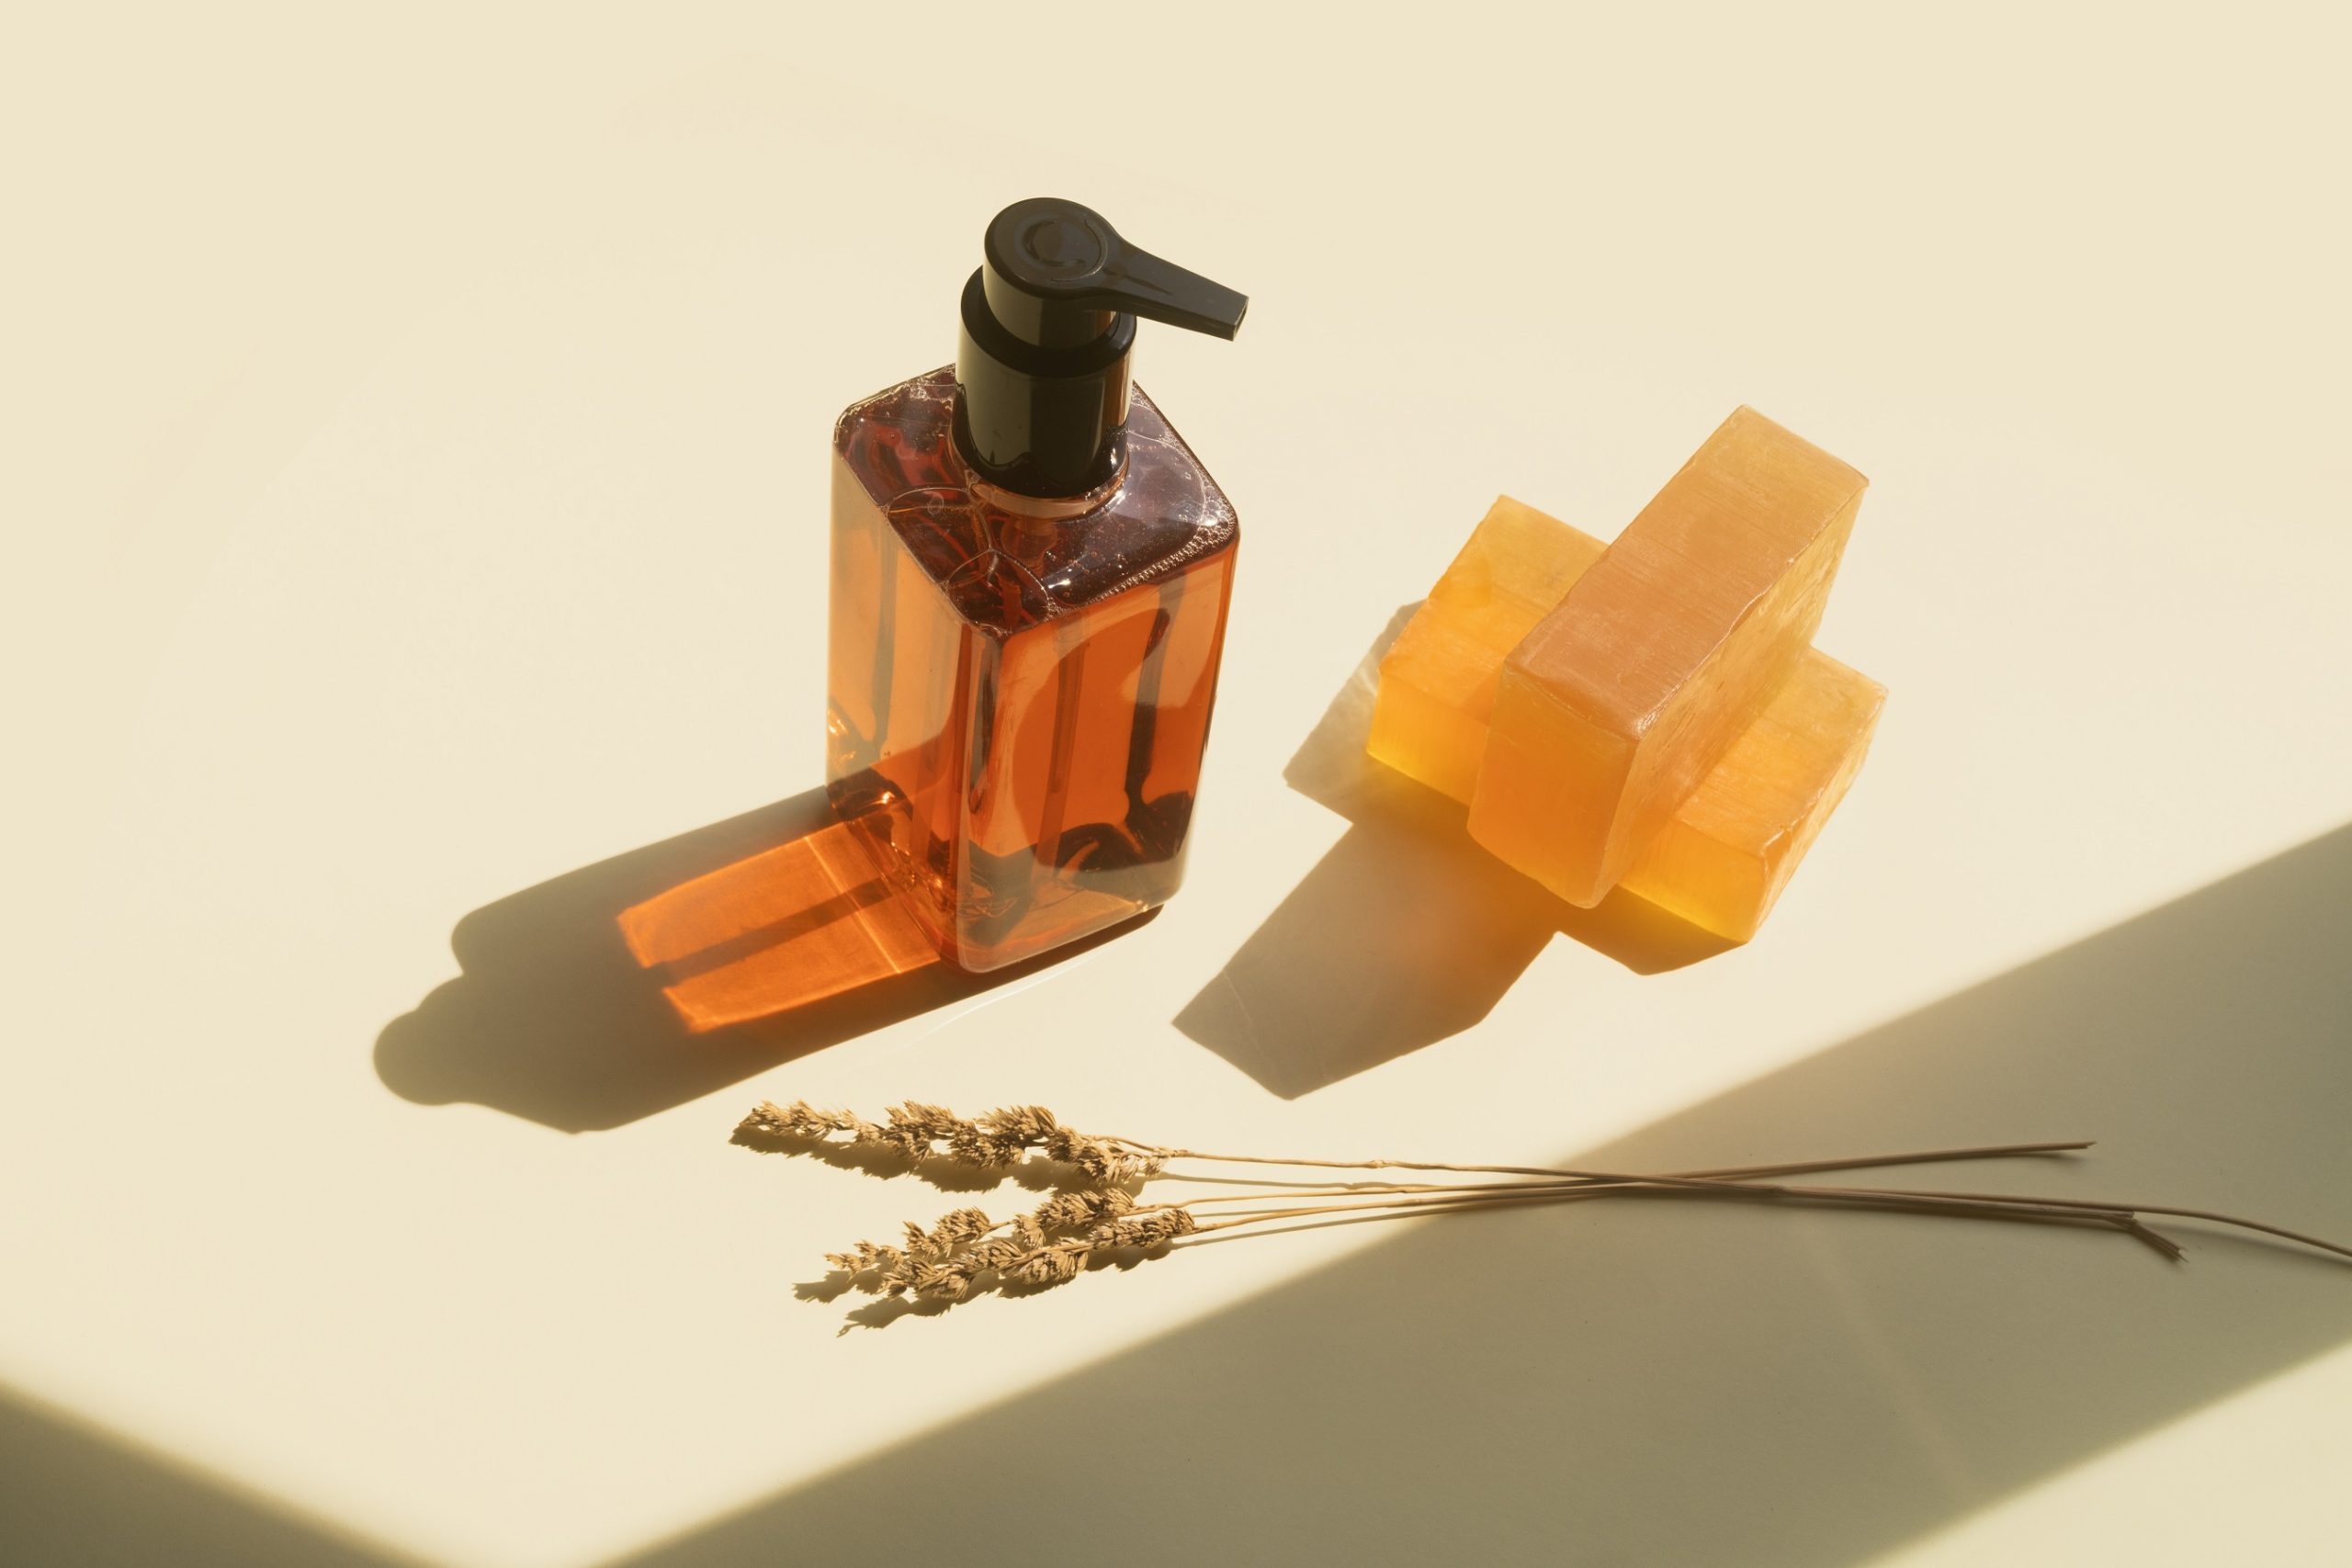 Nem csak a parfüm jöhet szóba - ha kedvenc illatodat kapni tusfürdő, szappan, testápoló vagy akár mosószer formájában is, ne félj használni. Egyértelműen bővül az illatfelhőd ezekkel